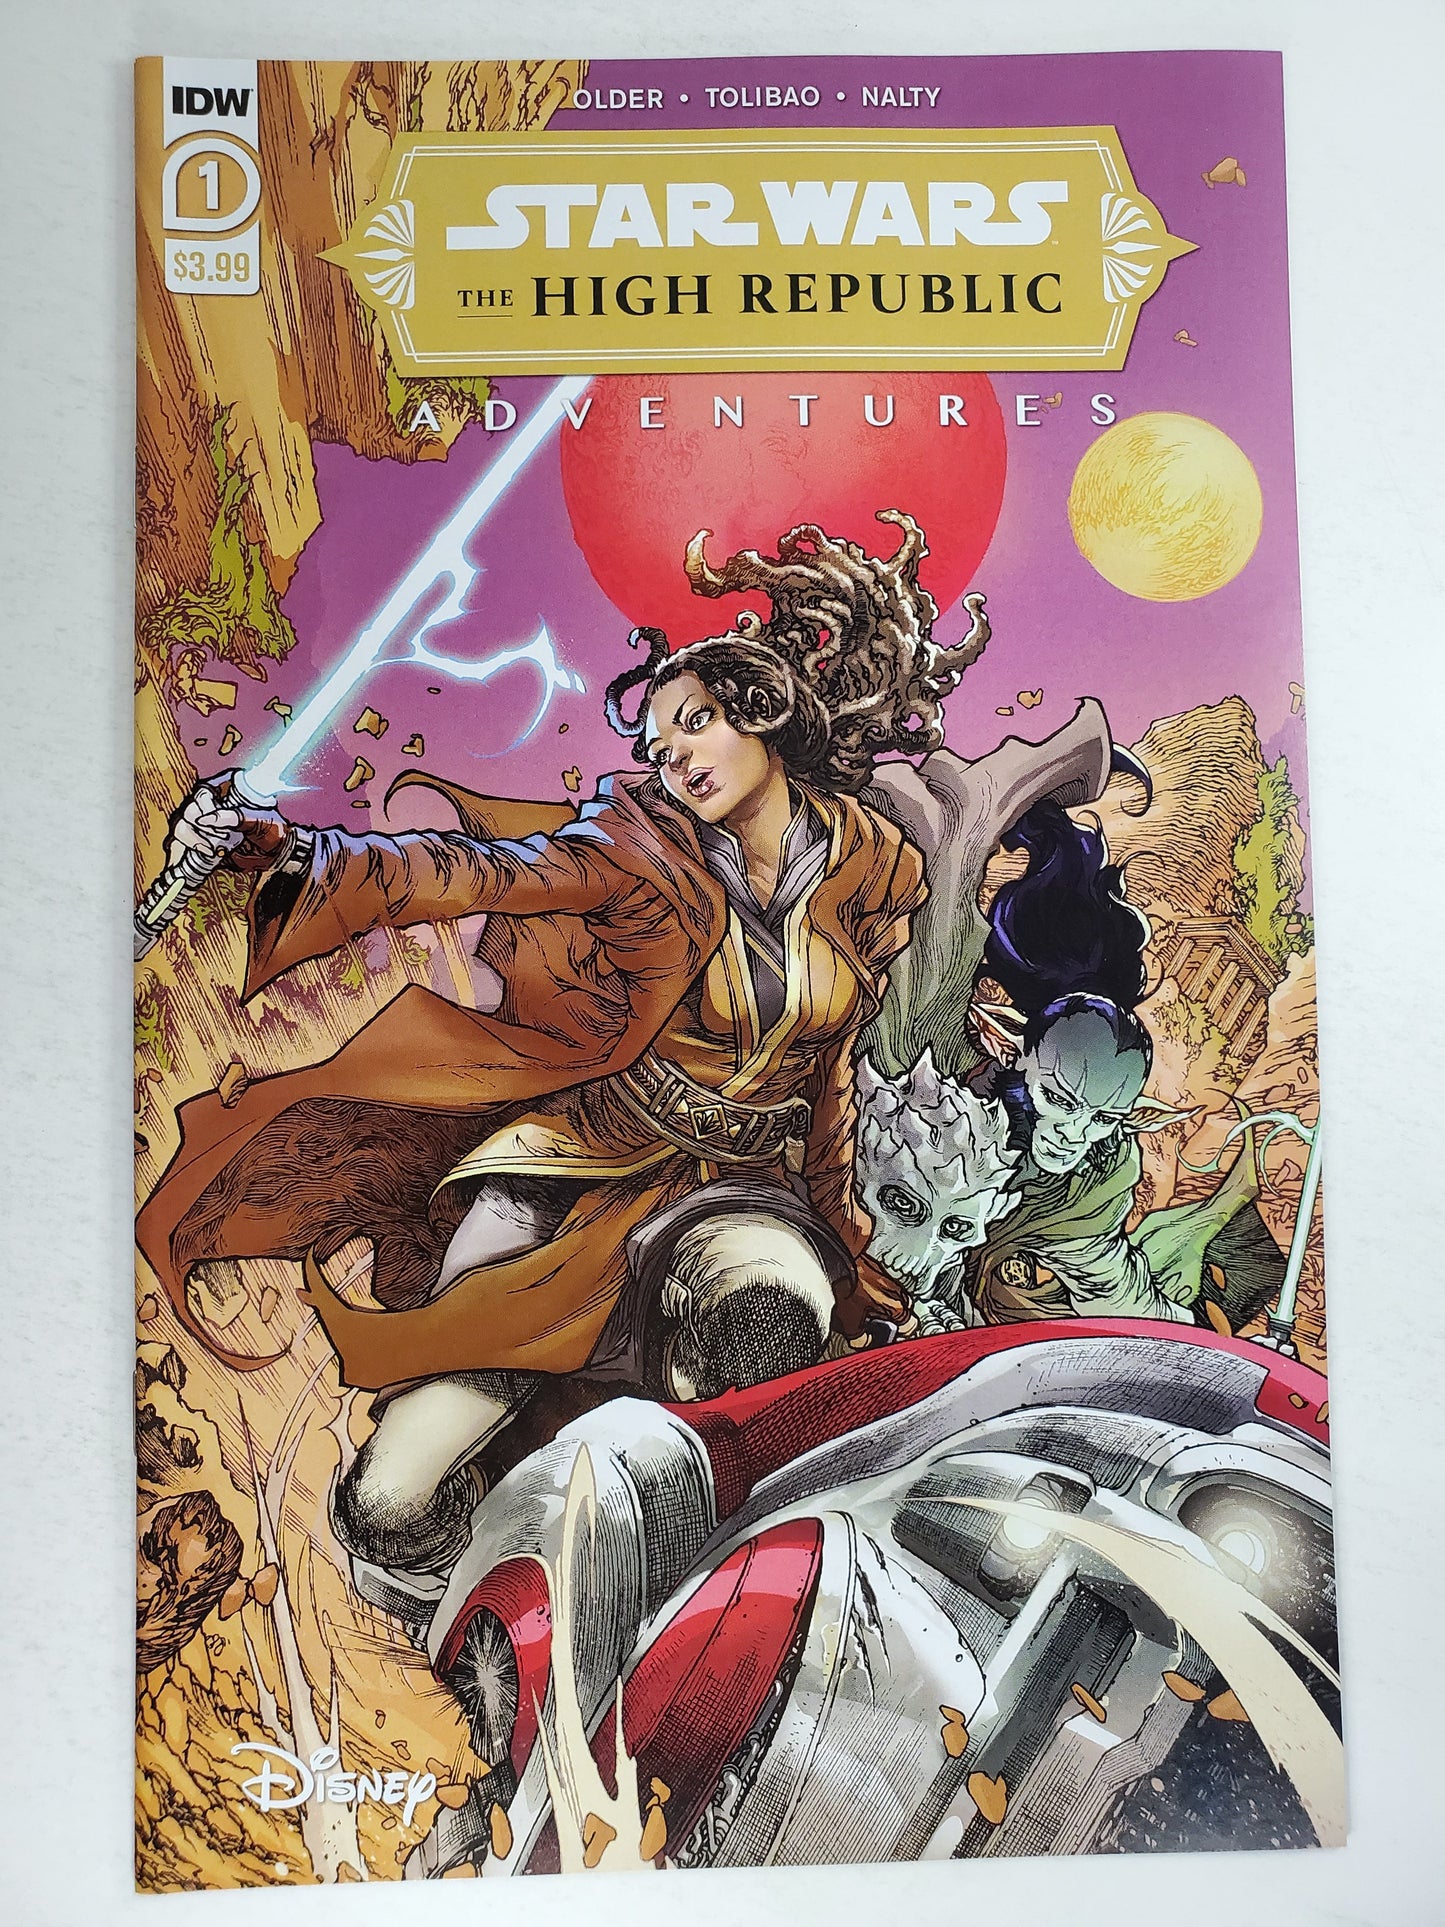 IDW Star Wars High Republic Adventures Vol 1 #1 (102012) Key